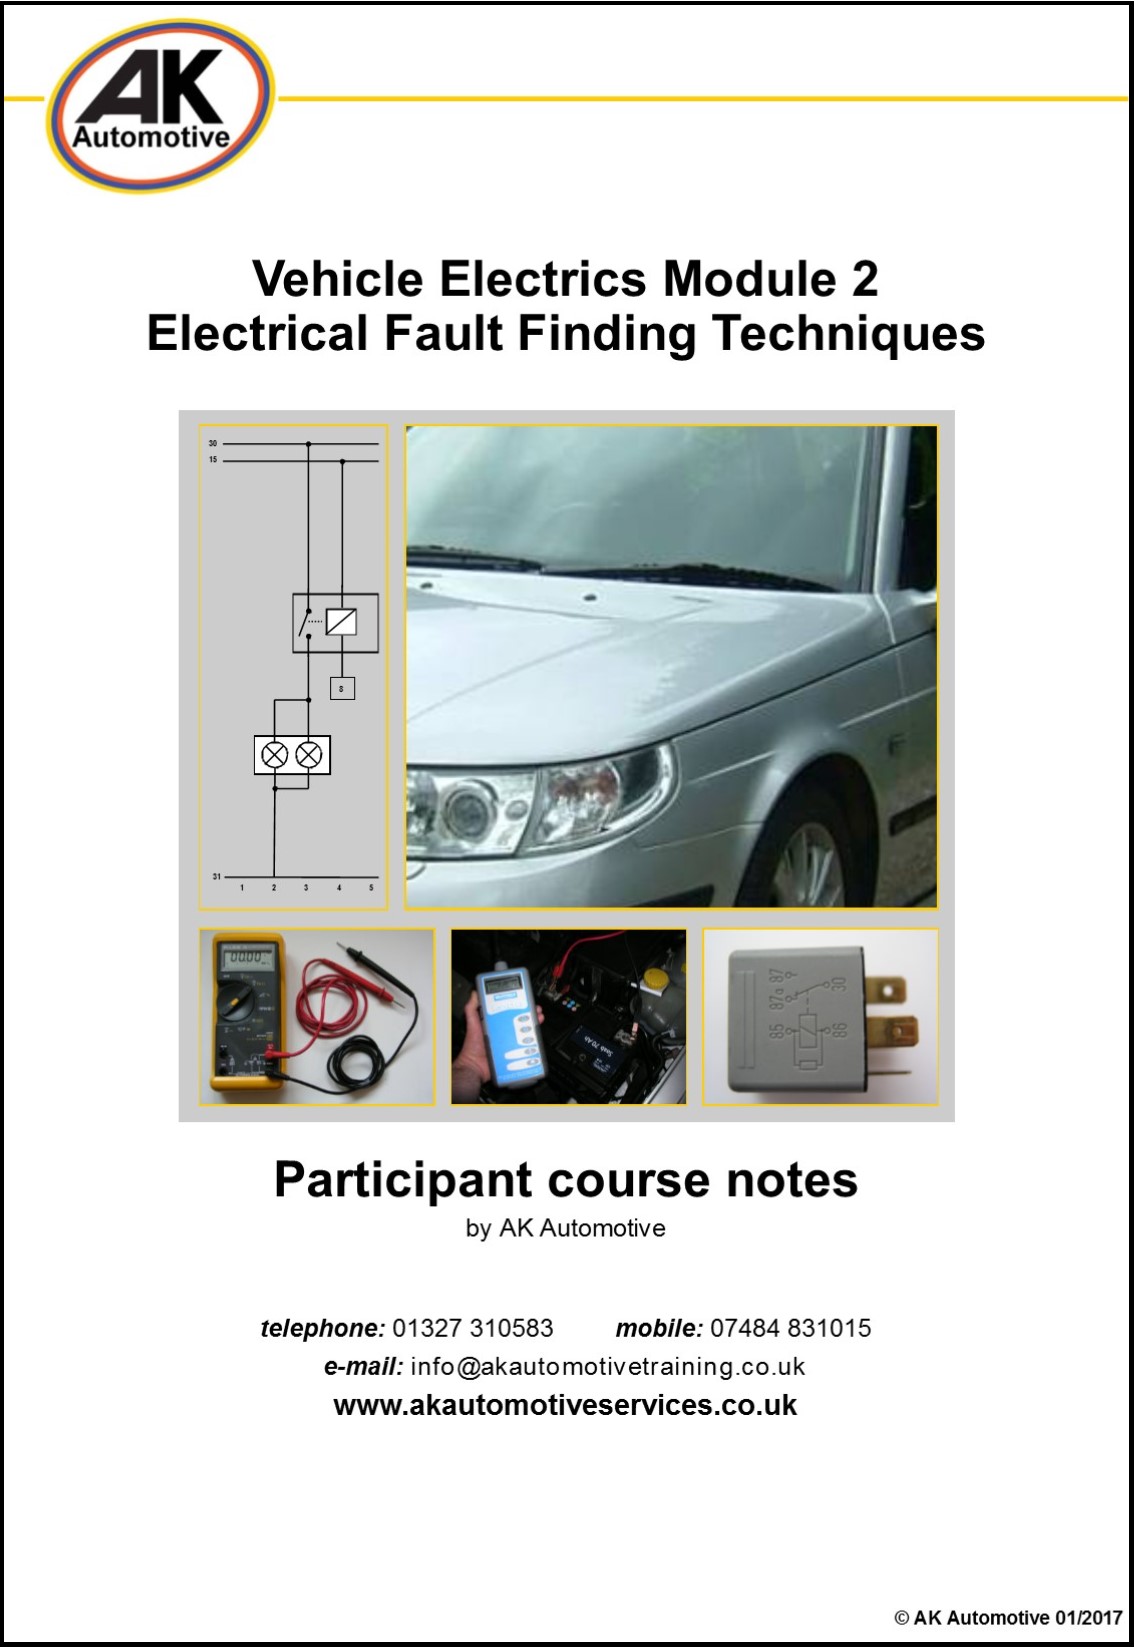 Vehicle Electrics Module 2 - Fault Finding Techniques